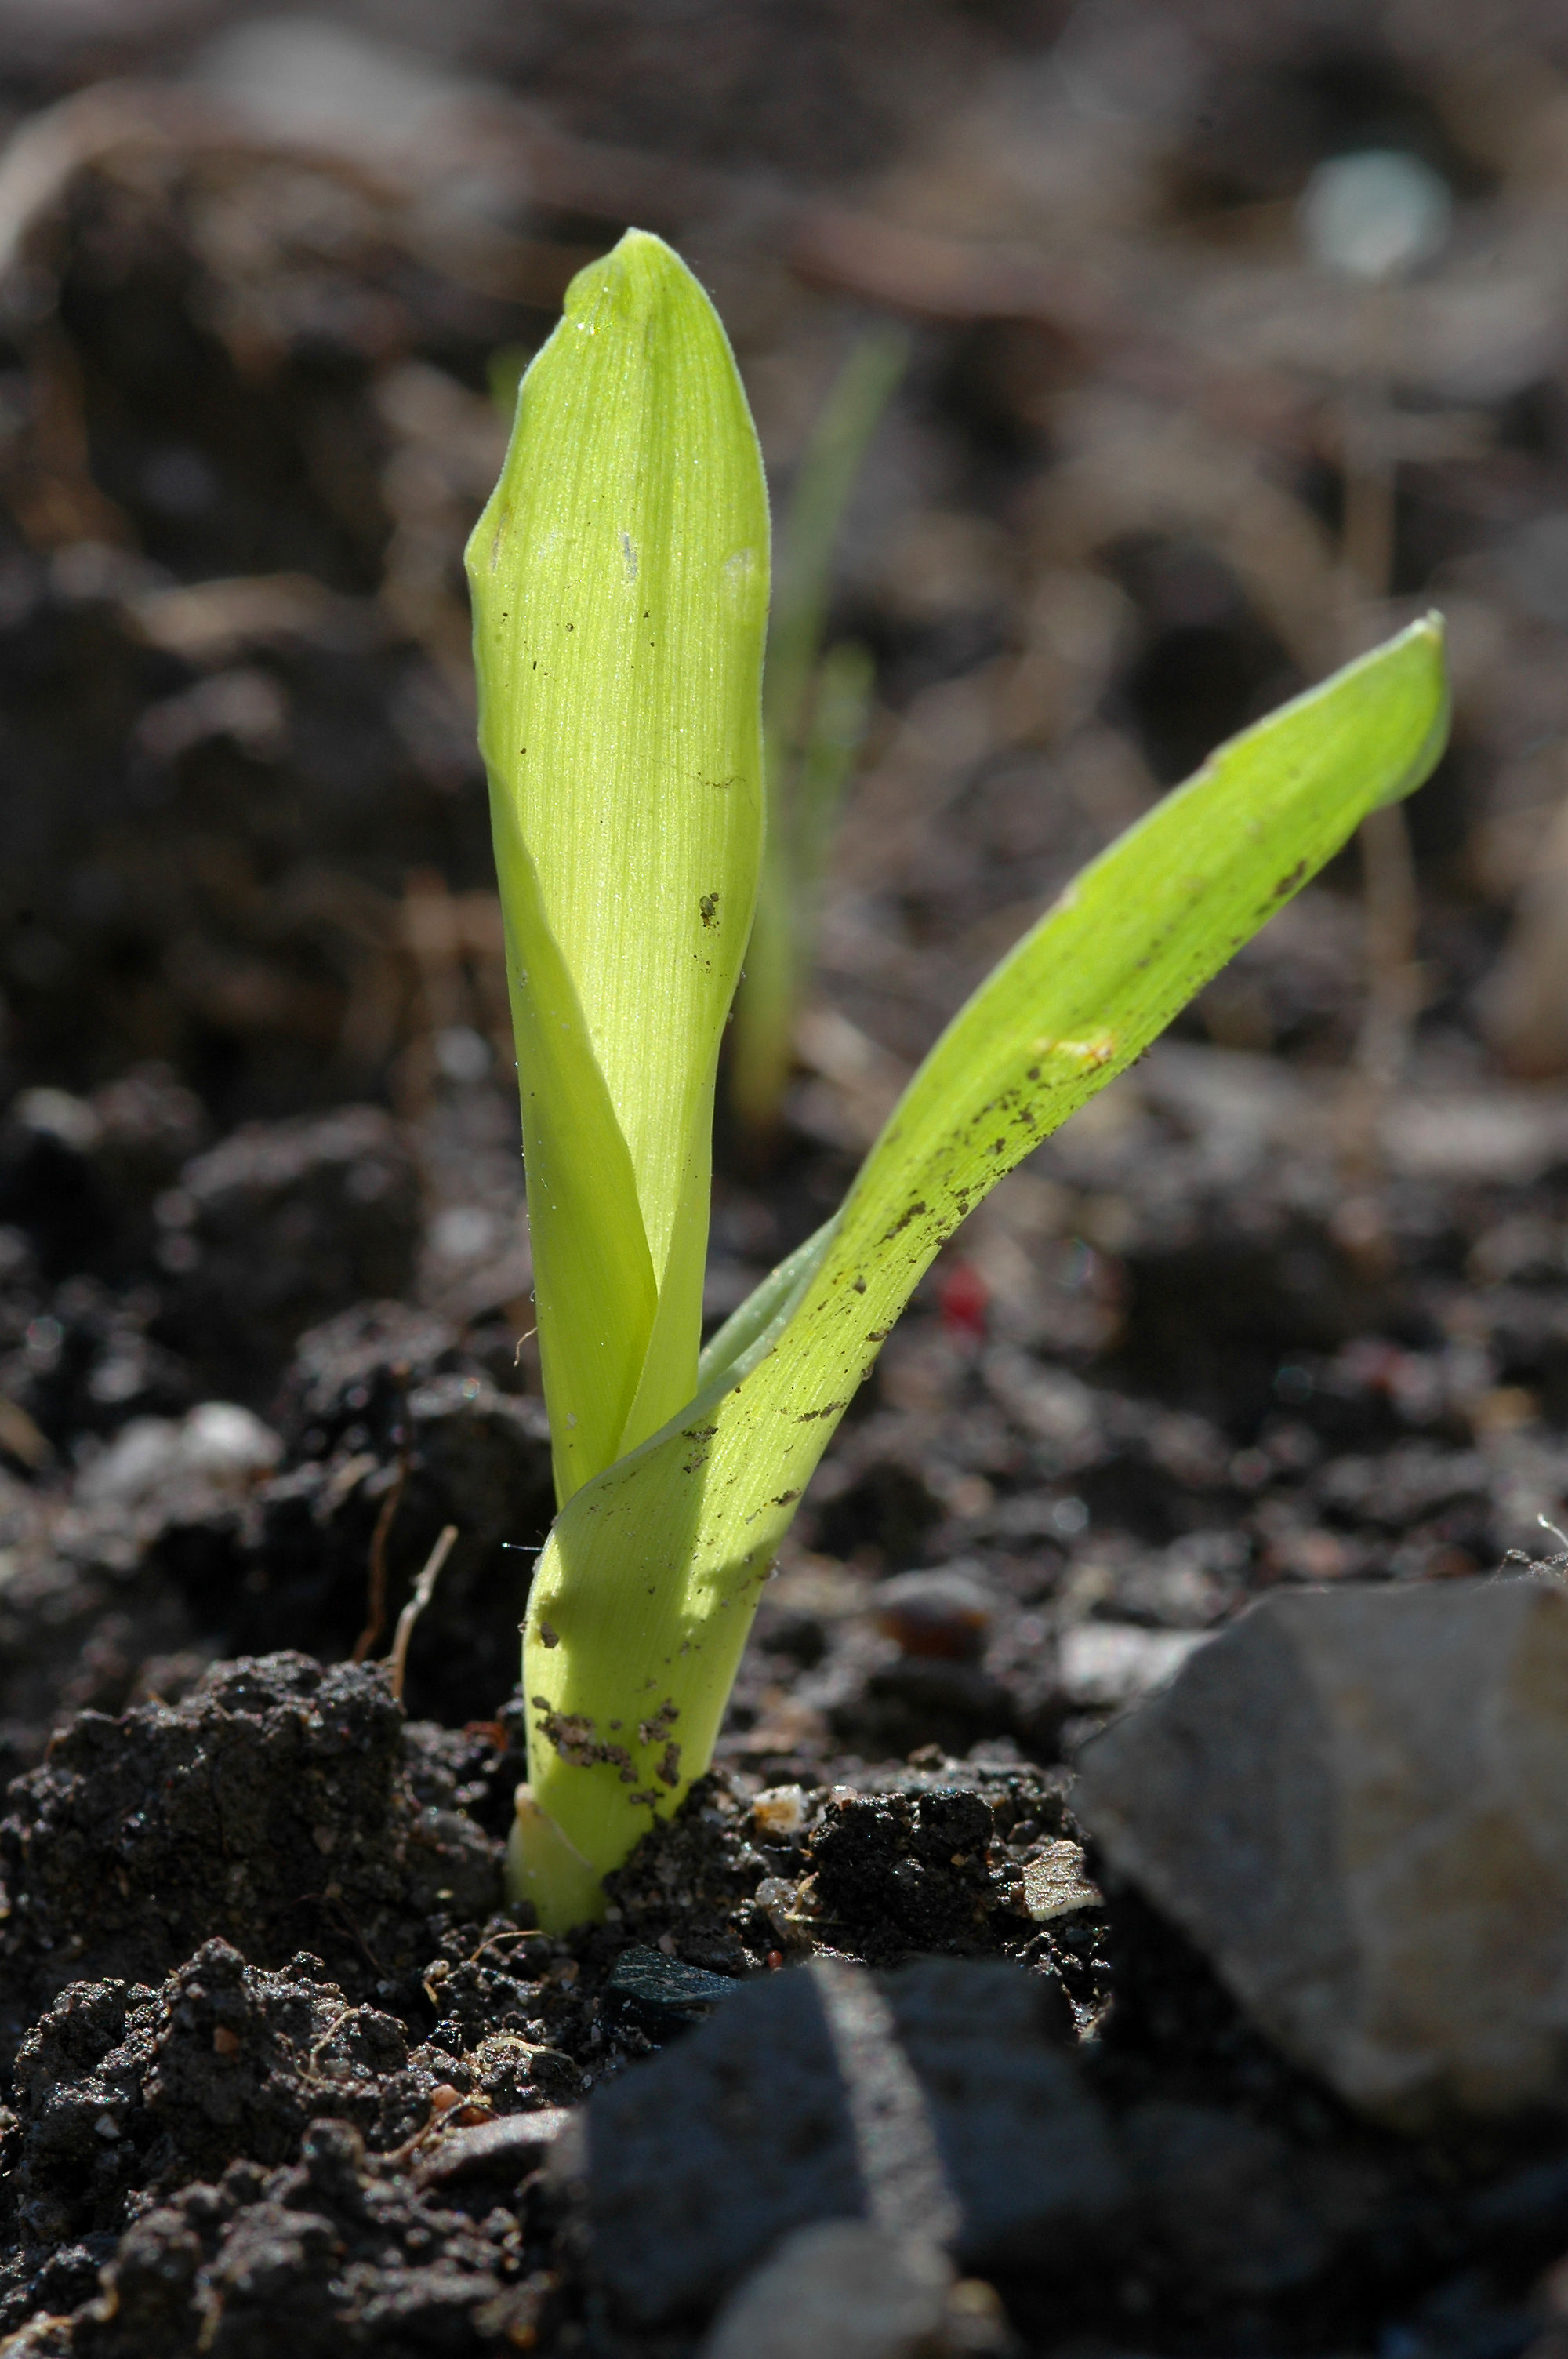 Seedlings-of-Corn